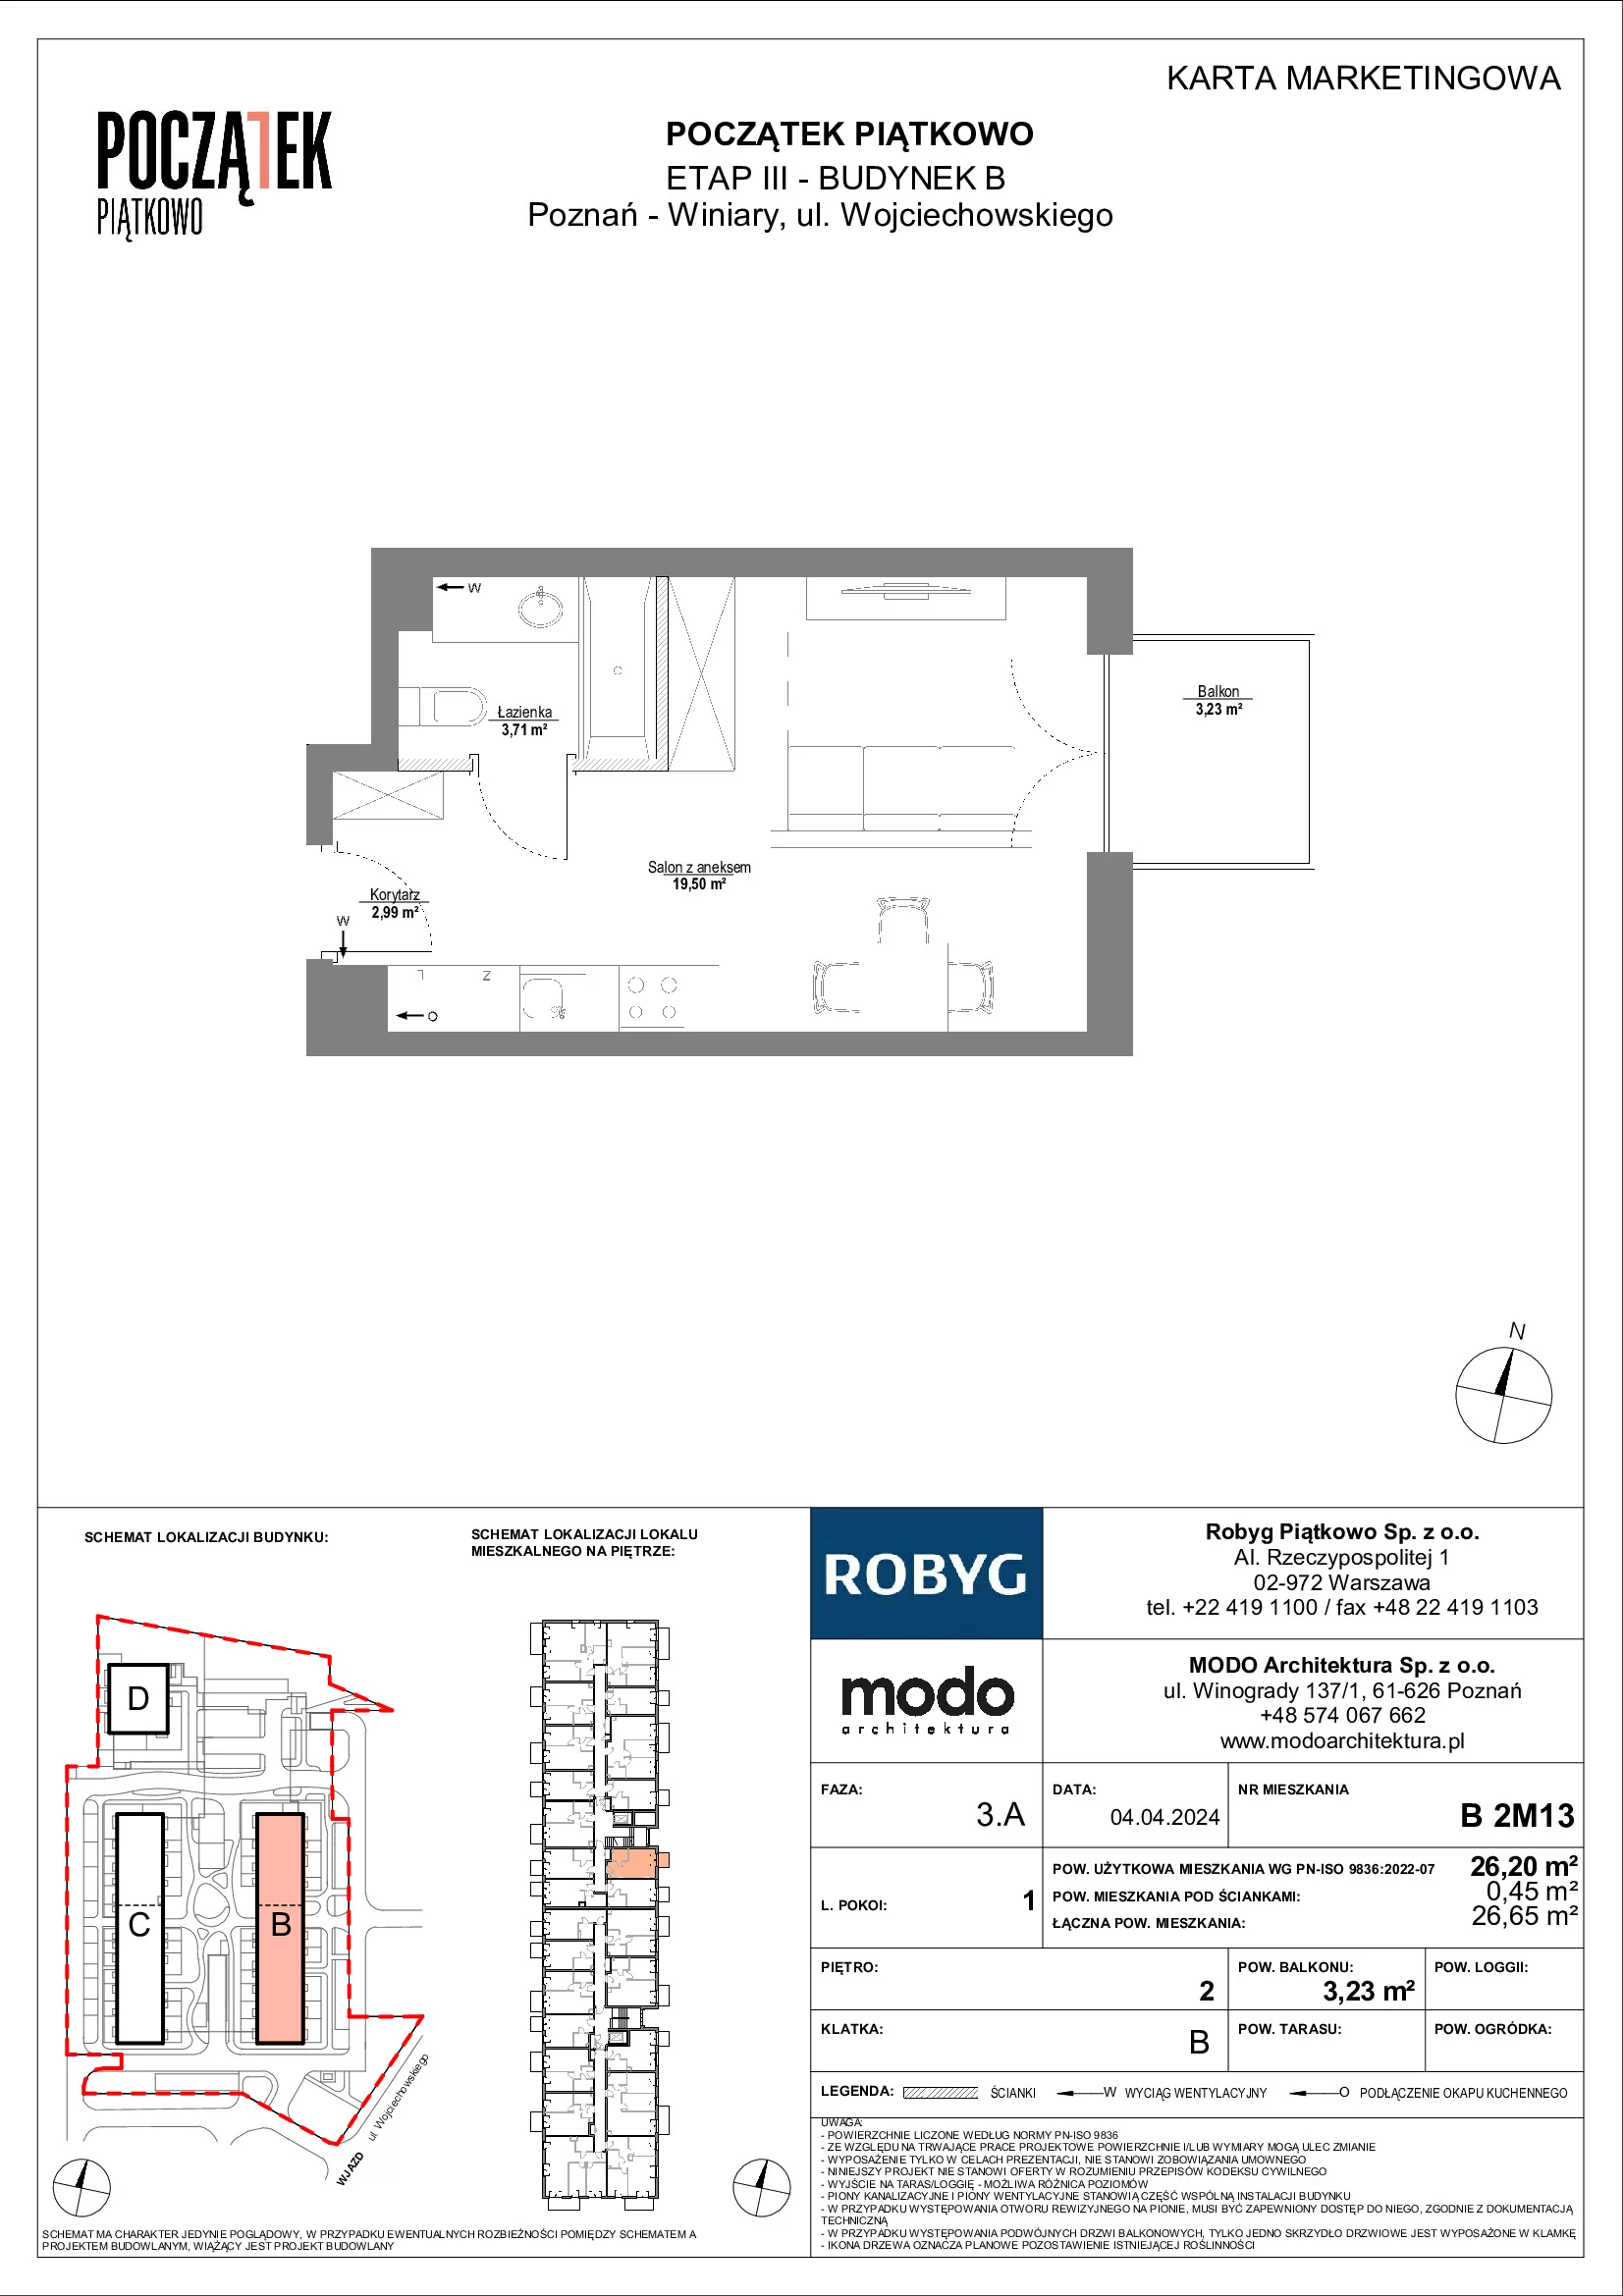 Mieszkanie 26,20 m², piętro 2, oferta nr B.2M13, Początek Piątkowo, Poznań, Piątkowo, ul. Wojciechowskiego